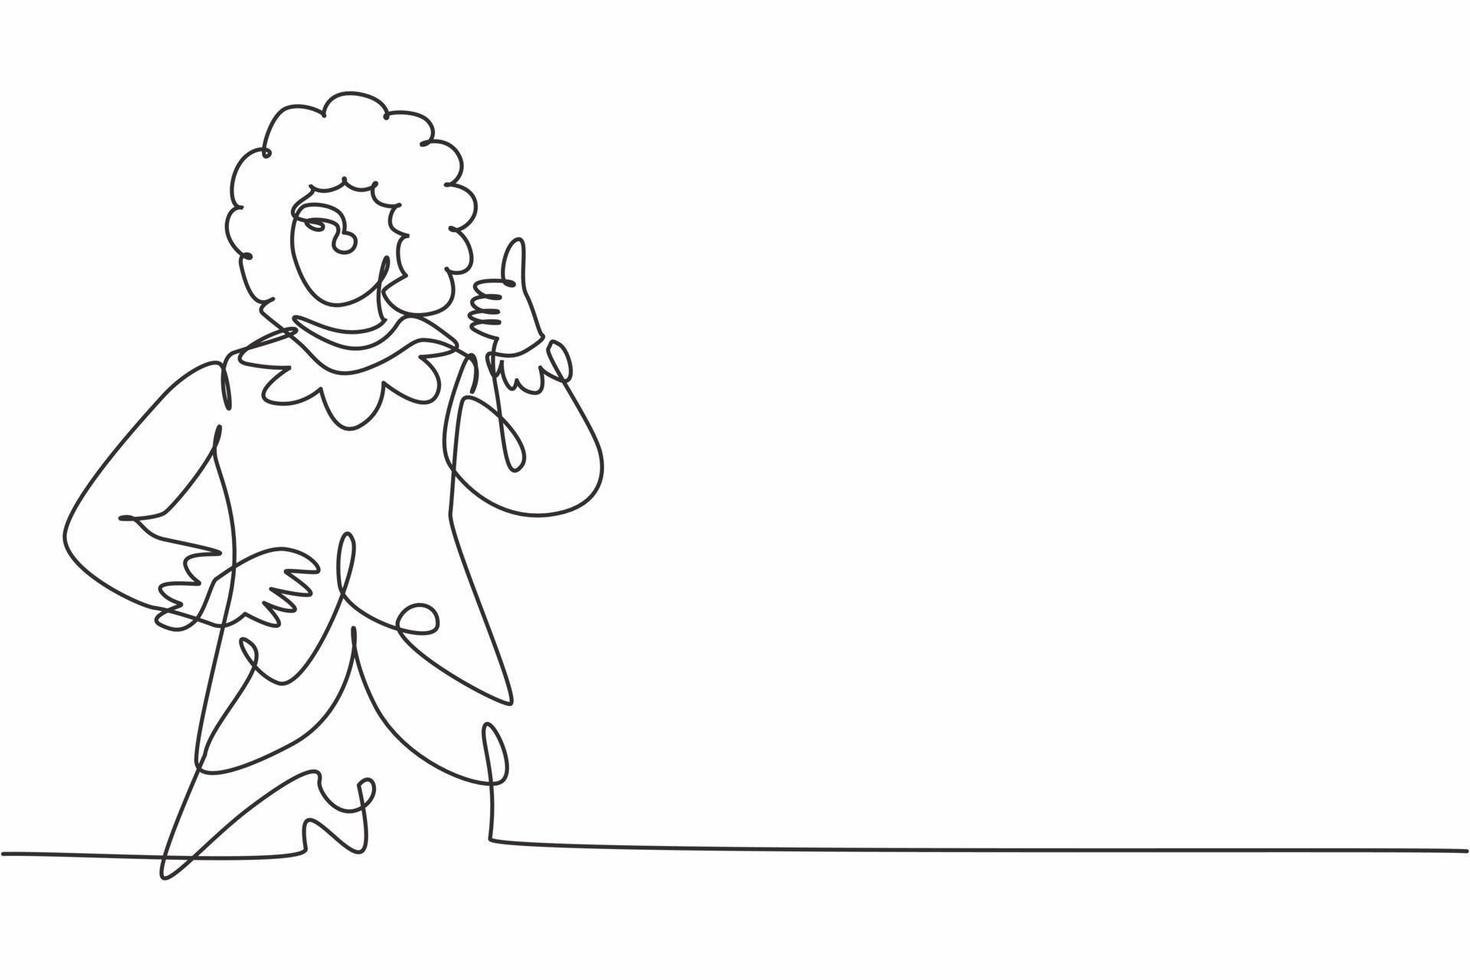 payaso femenino de dibujo continuo de una línea con gesto de pulgar hacia arriba, con una peluca y maquillaje de cara sonriente, entreteniendo a los niños en un cumpleaños festivo. Ilustración gráfica de vector de diseño de dibujo de una sola línea